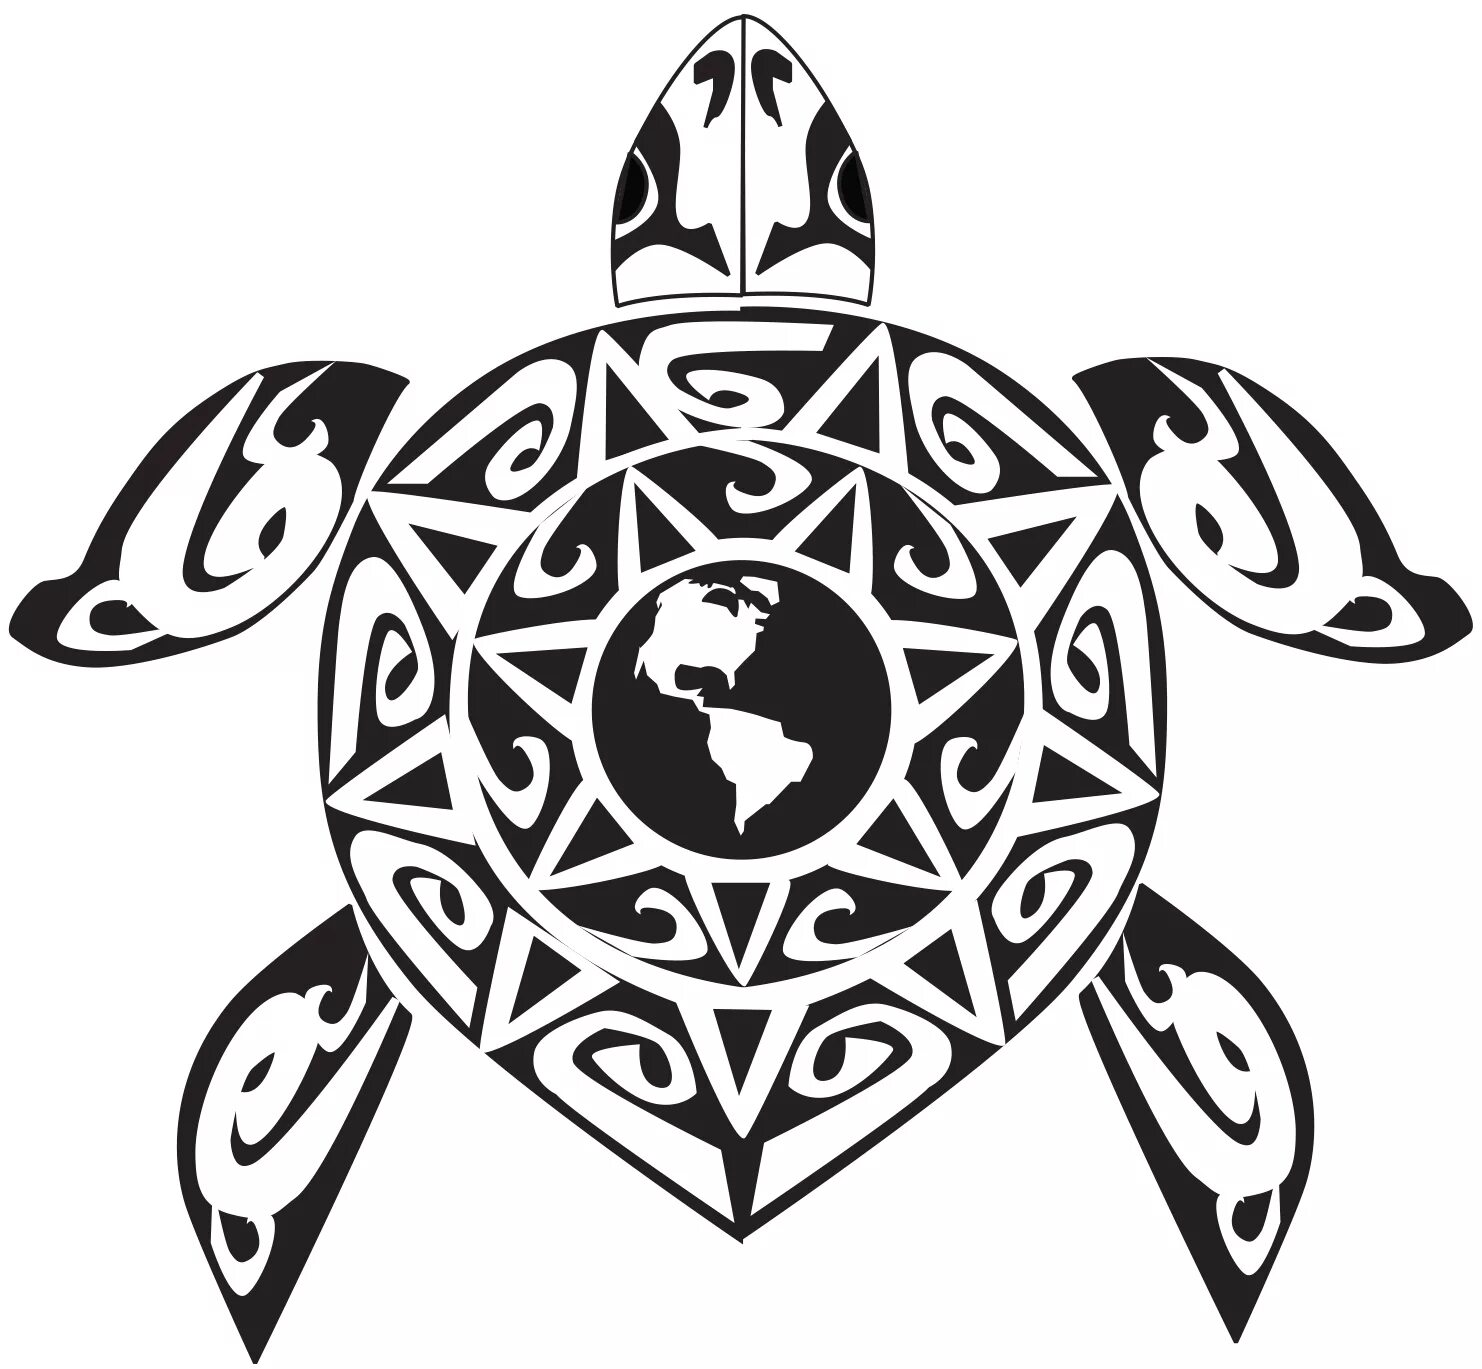 Черепаха значение. Полинезийская черепаха тату. Тату черепаха в полинезийском стиле. Полинезийская черепаха тату эскиз. Маори Полинезия черепаха.